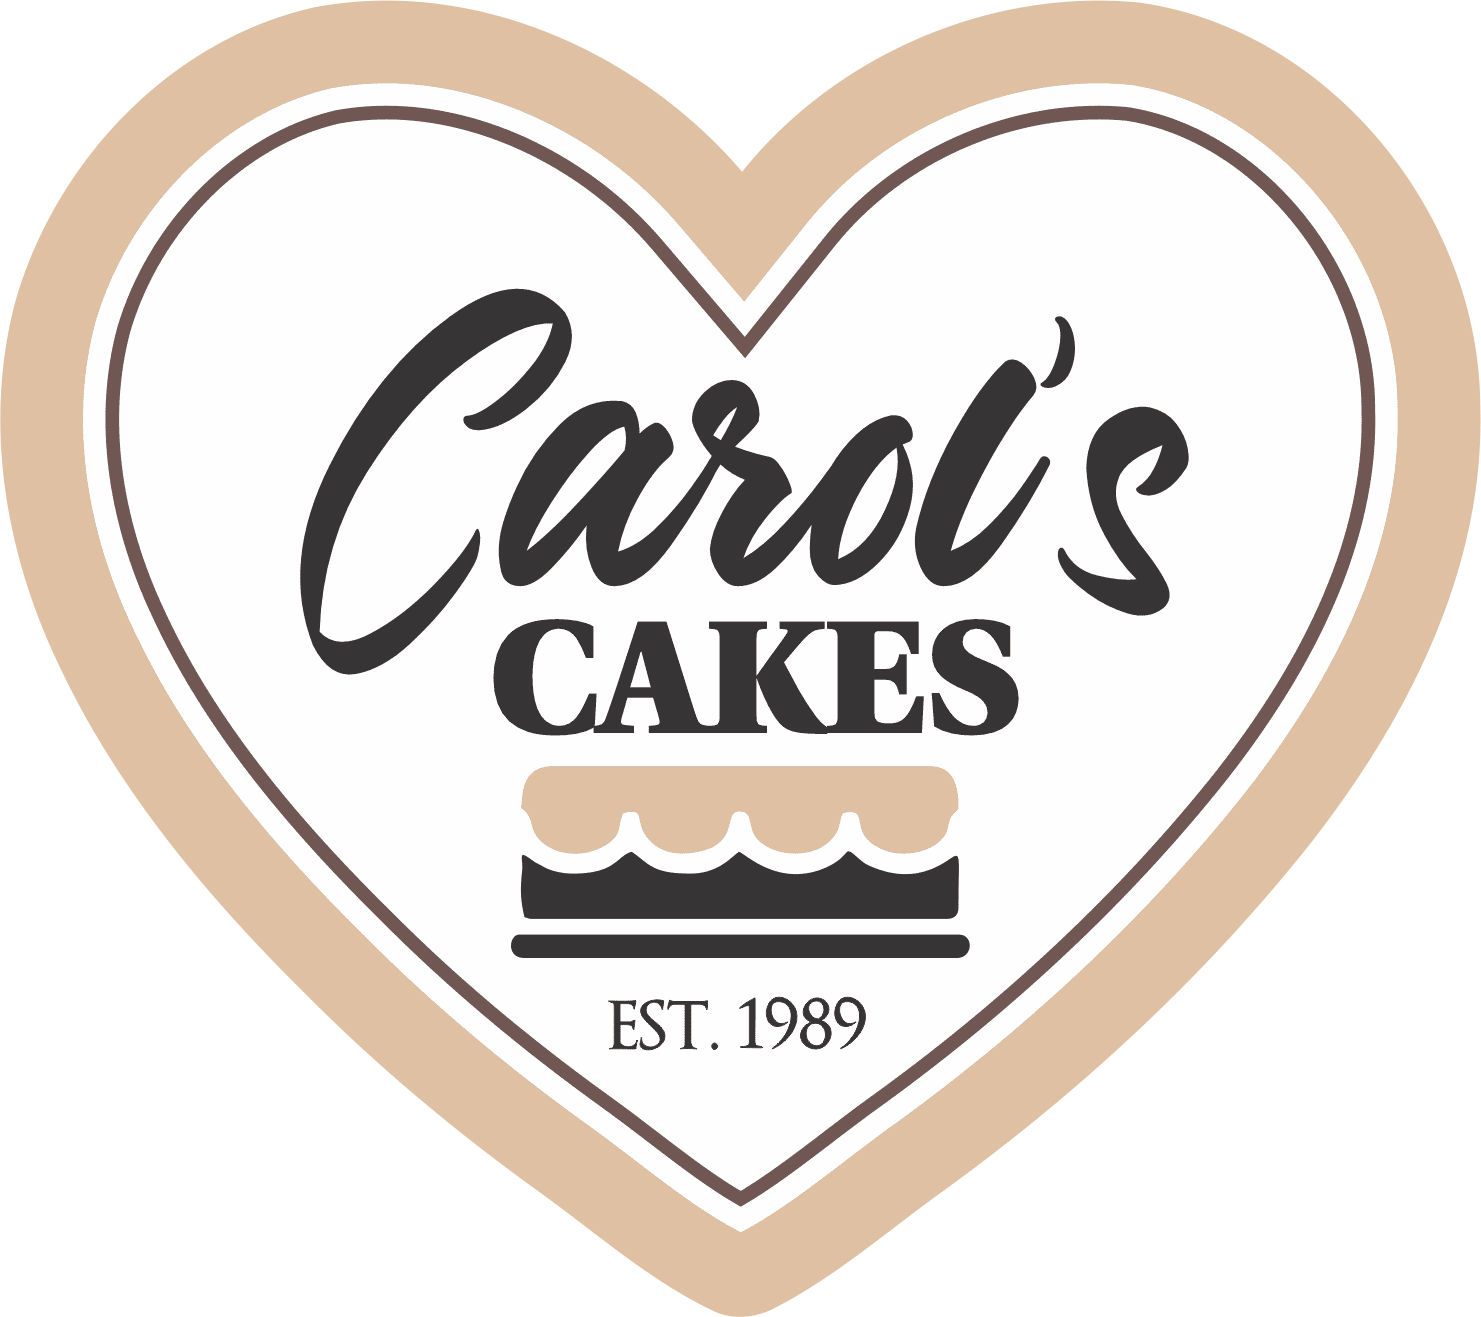 Carol's Cakes